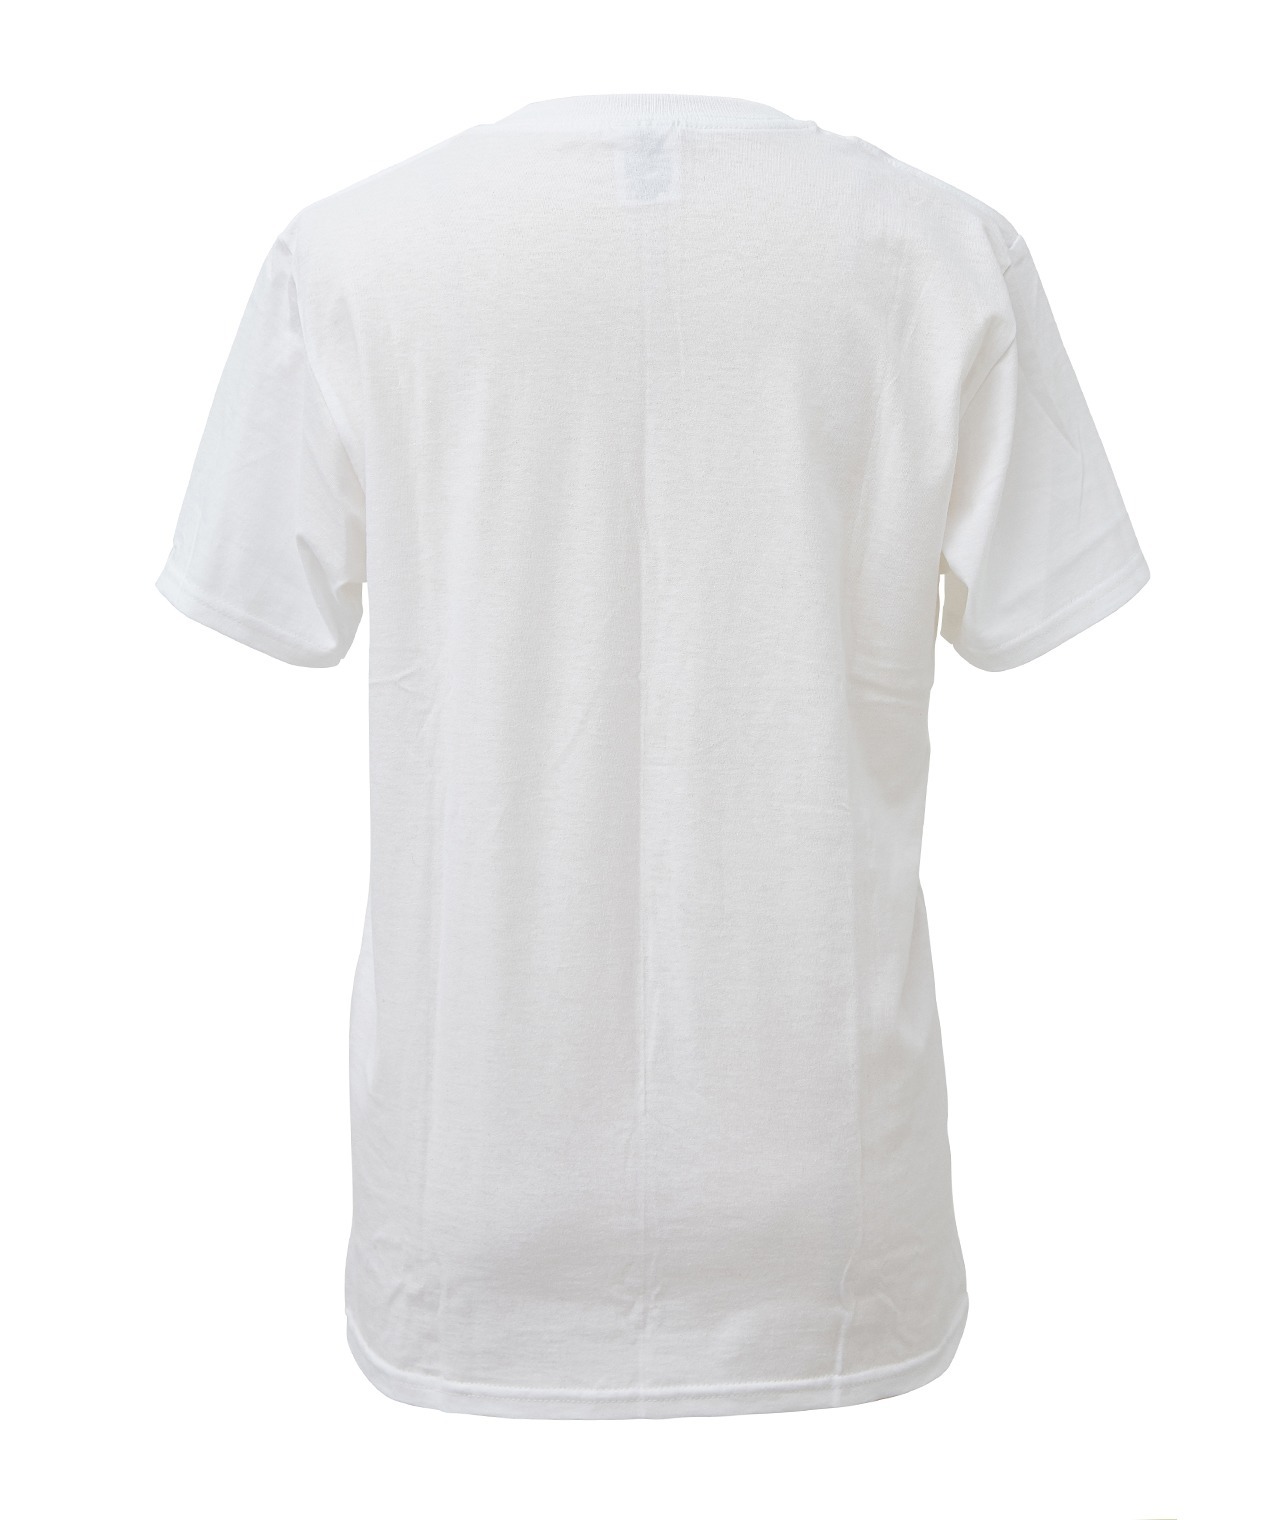 【別注】FRUIT OF THE LOOM/刺繍パックTシャツ 詳細画像 ホワイト/グレー 4